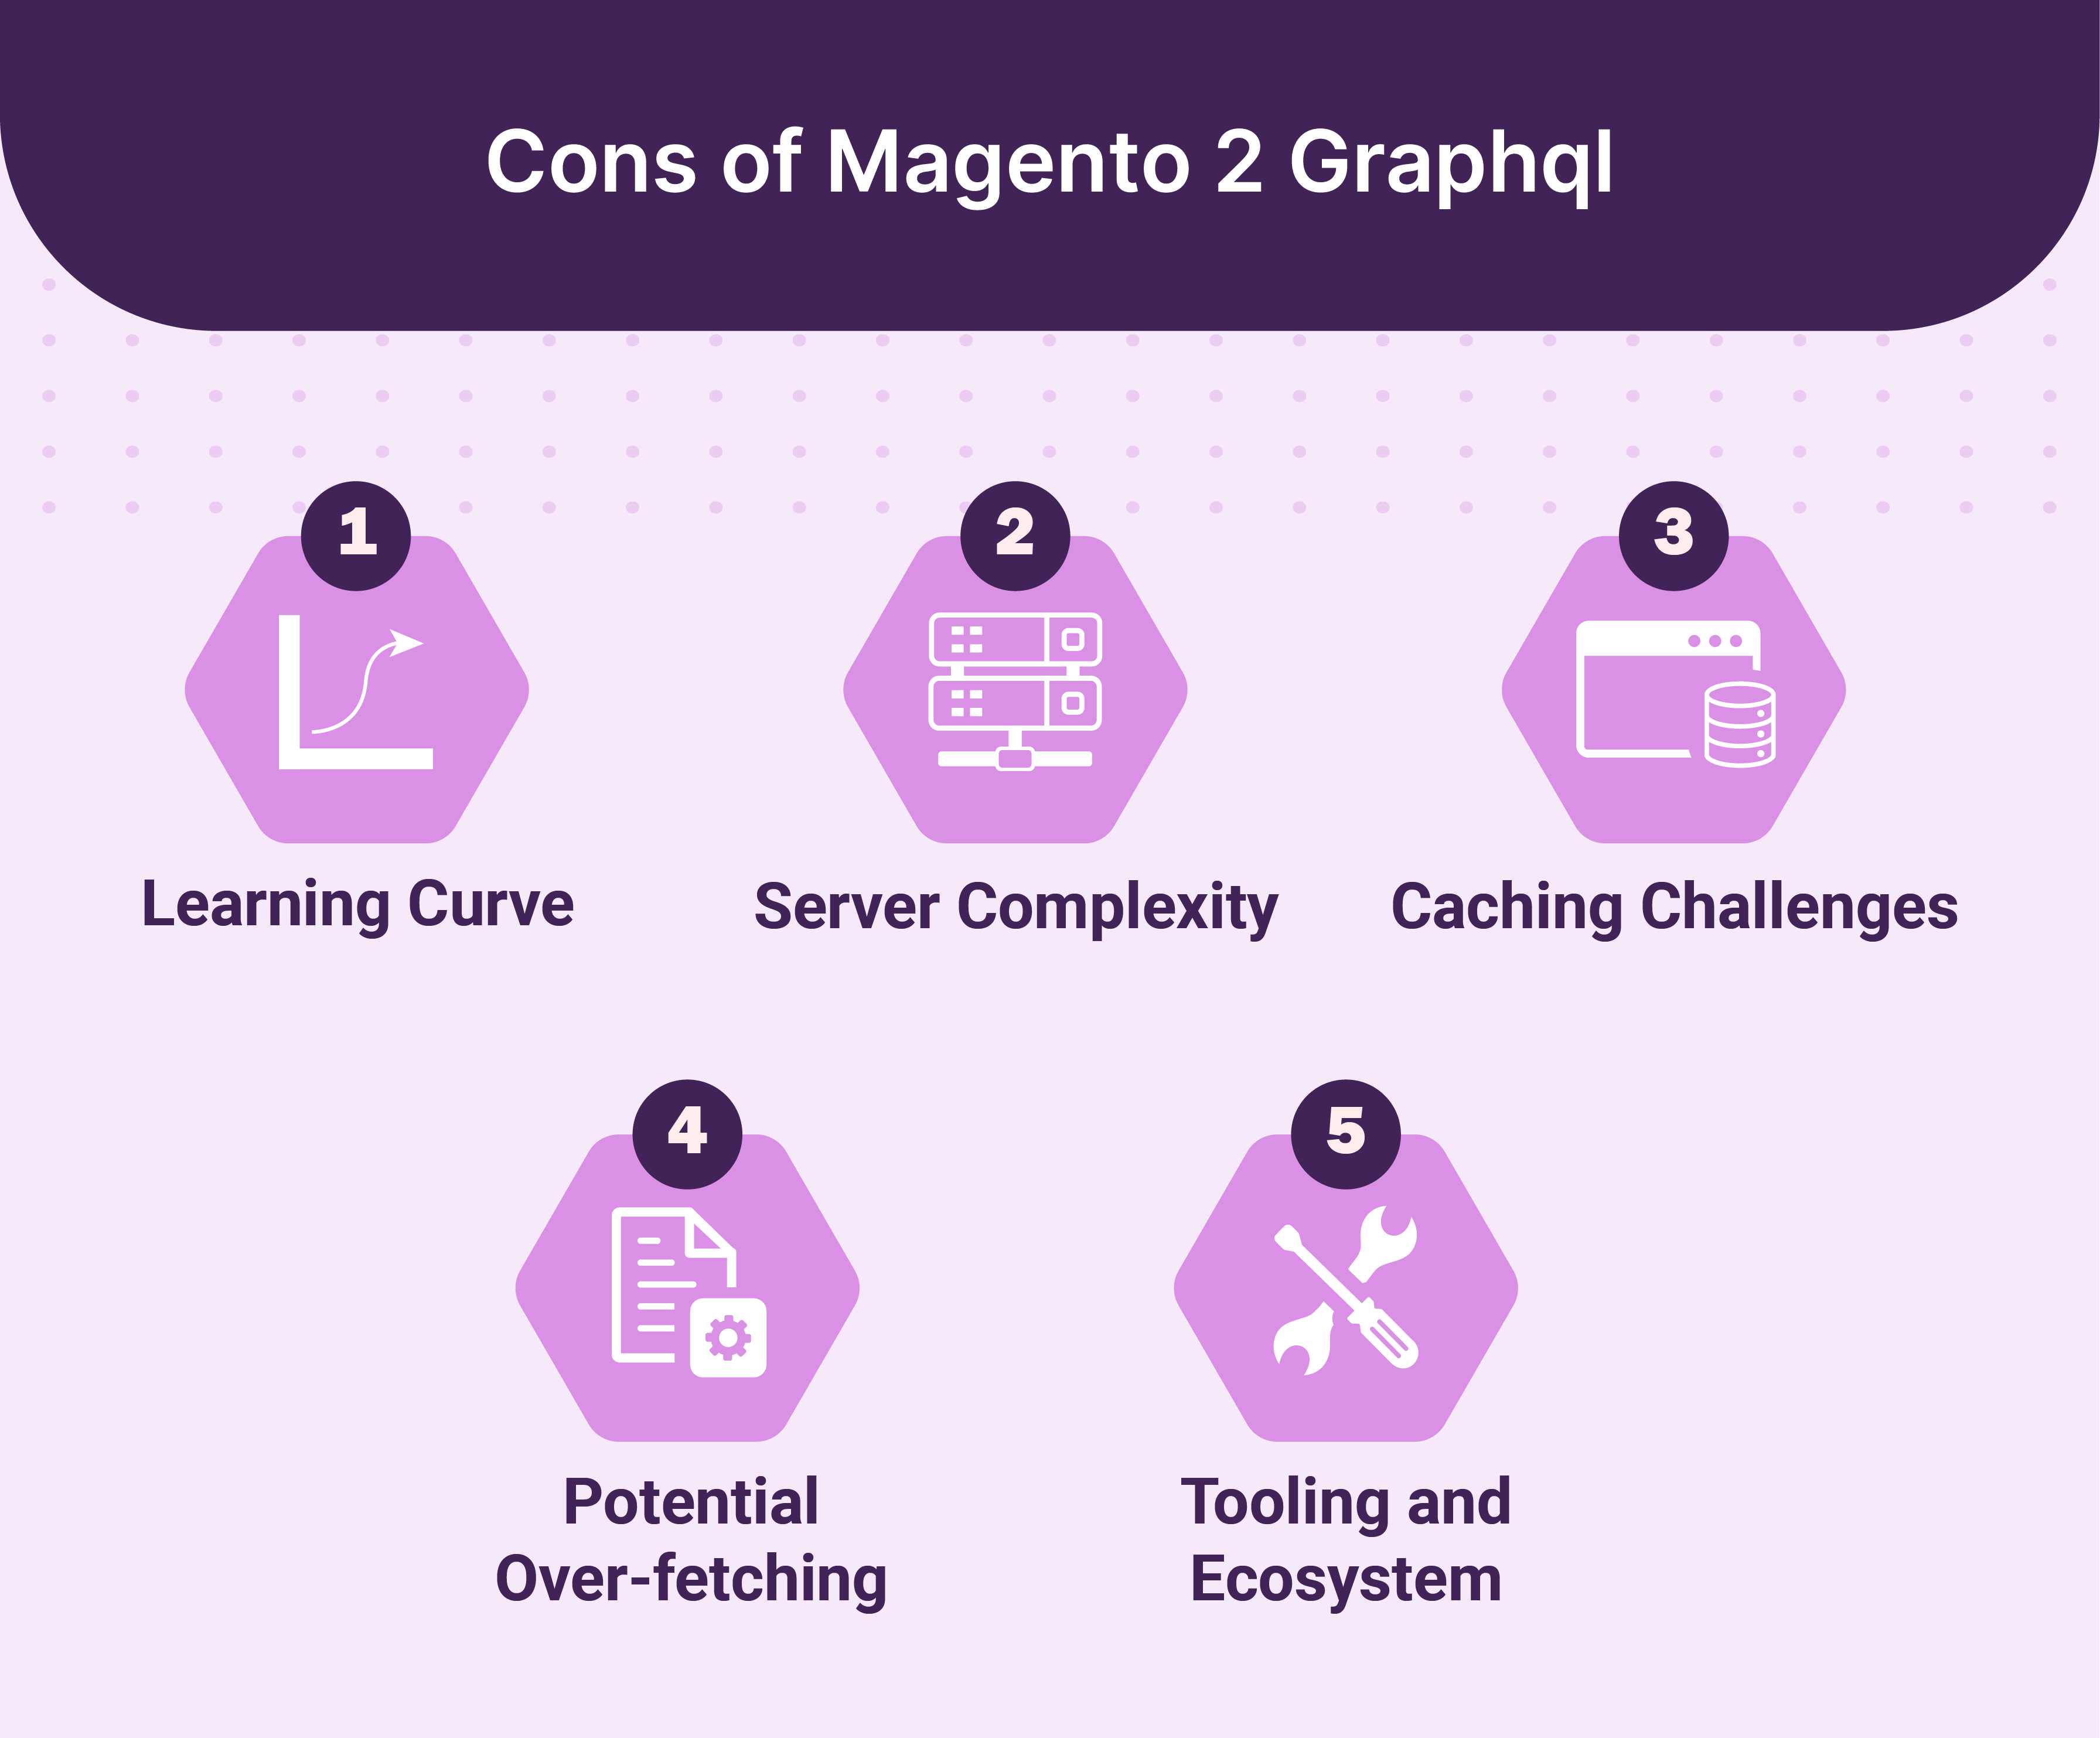 Cons of Magento 2 Graphql